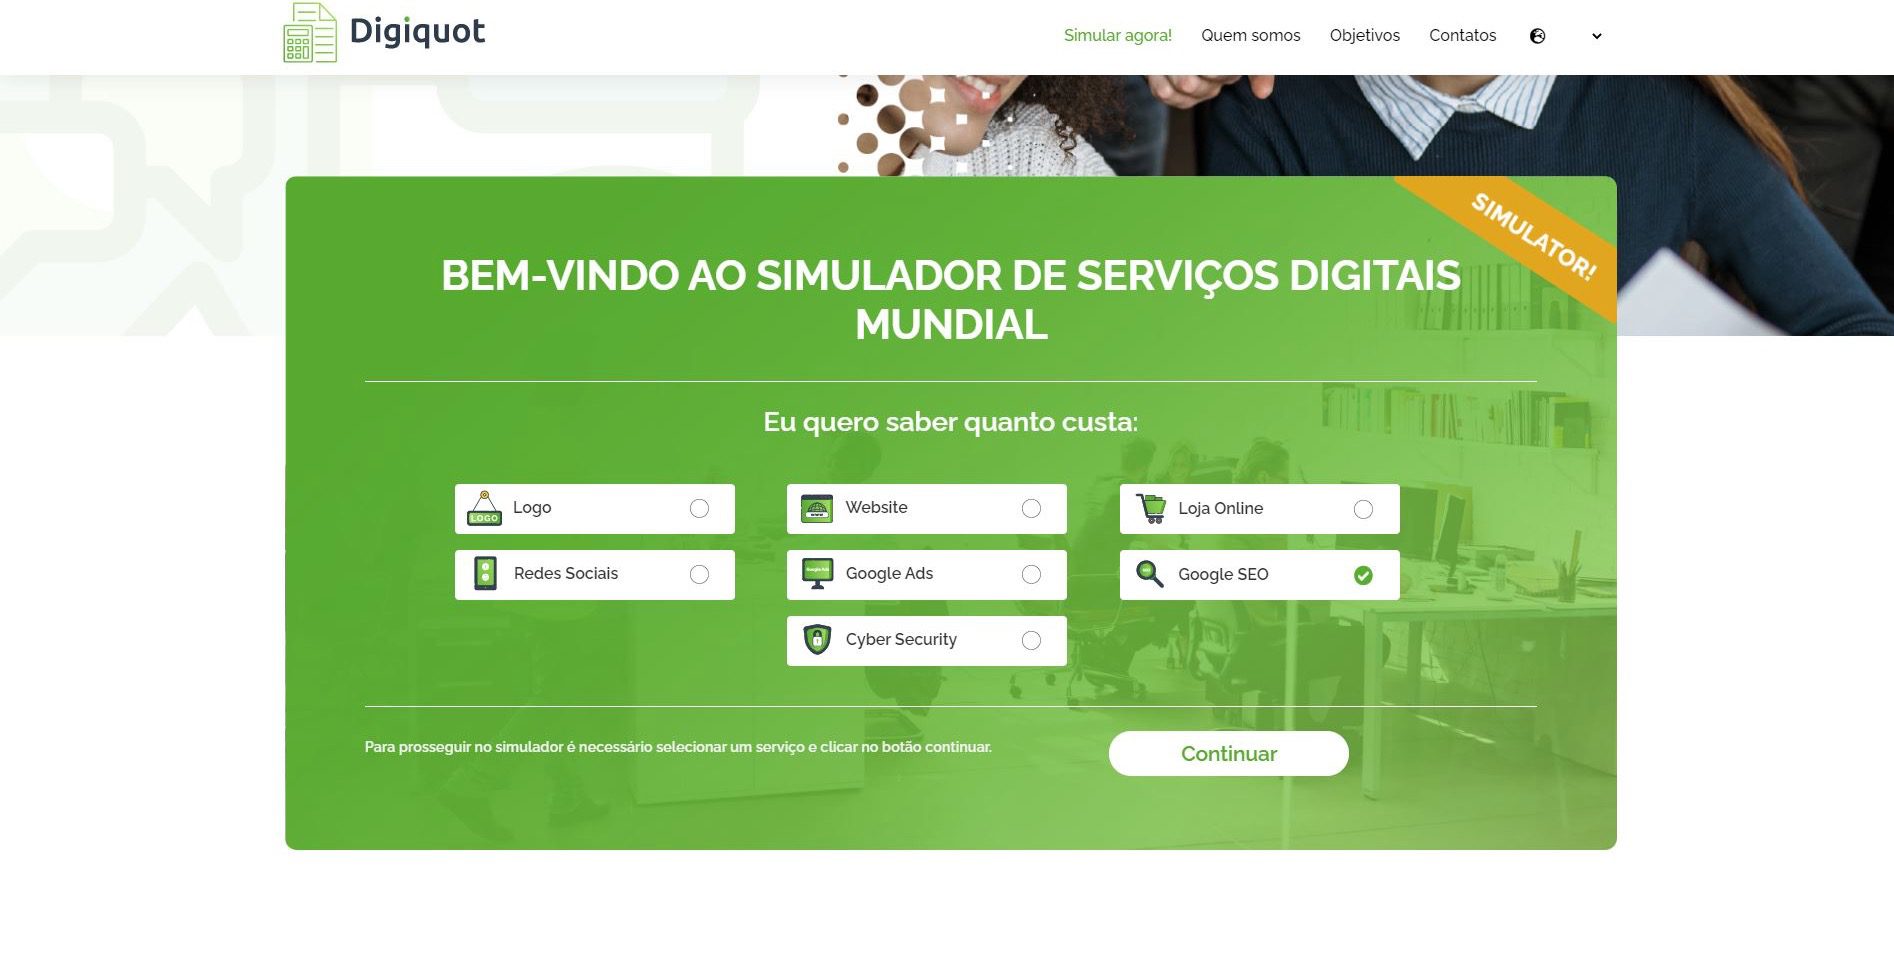 DIGIQUOT. Portugueses lançam plataforma global que otimiza capacidade de resposta em serviços digitais